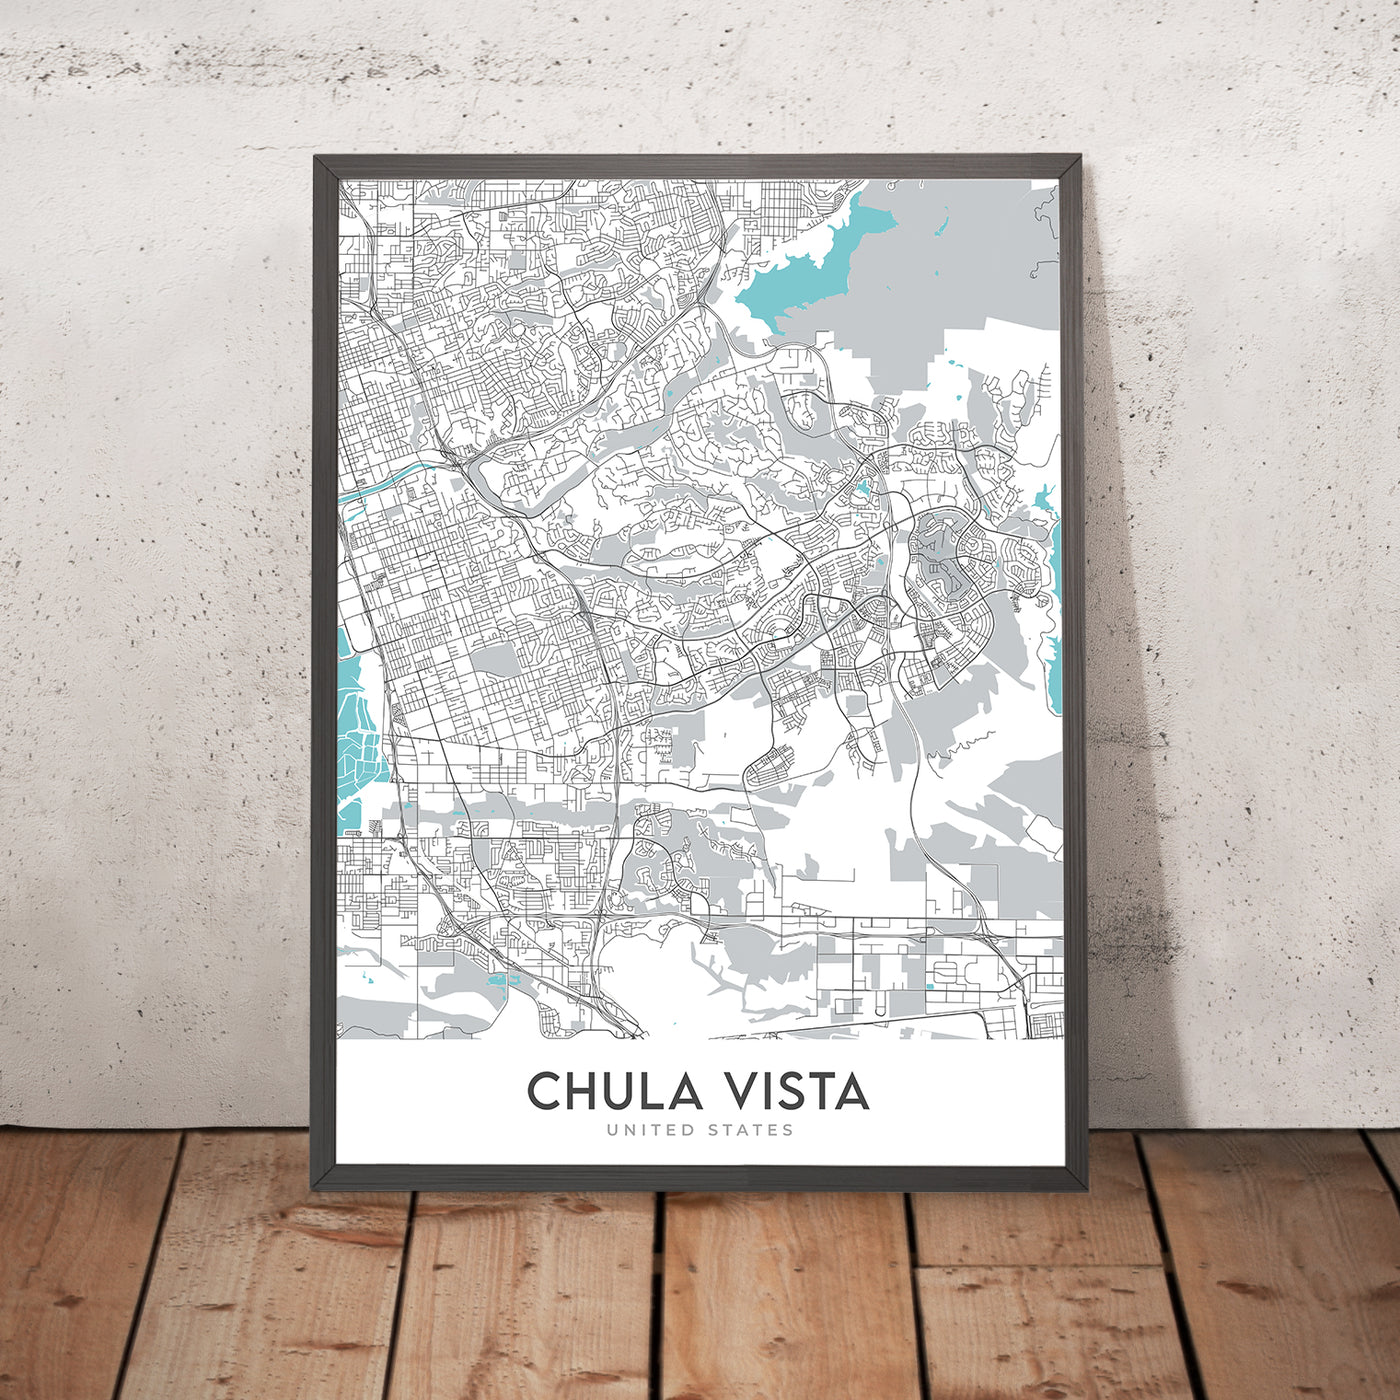 Moderner Stadtplan von Chula Vista, Kalifornien: Castle Park, Eastlake, Interstate 5, Interstate 805, San Diego Bay